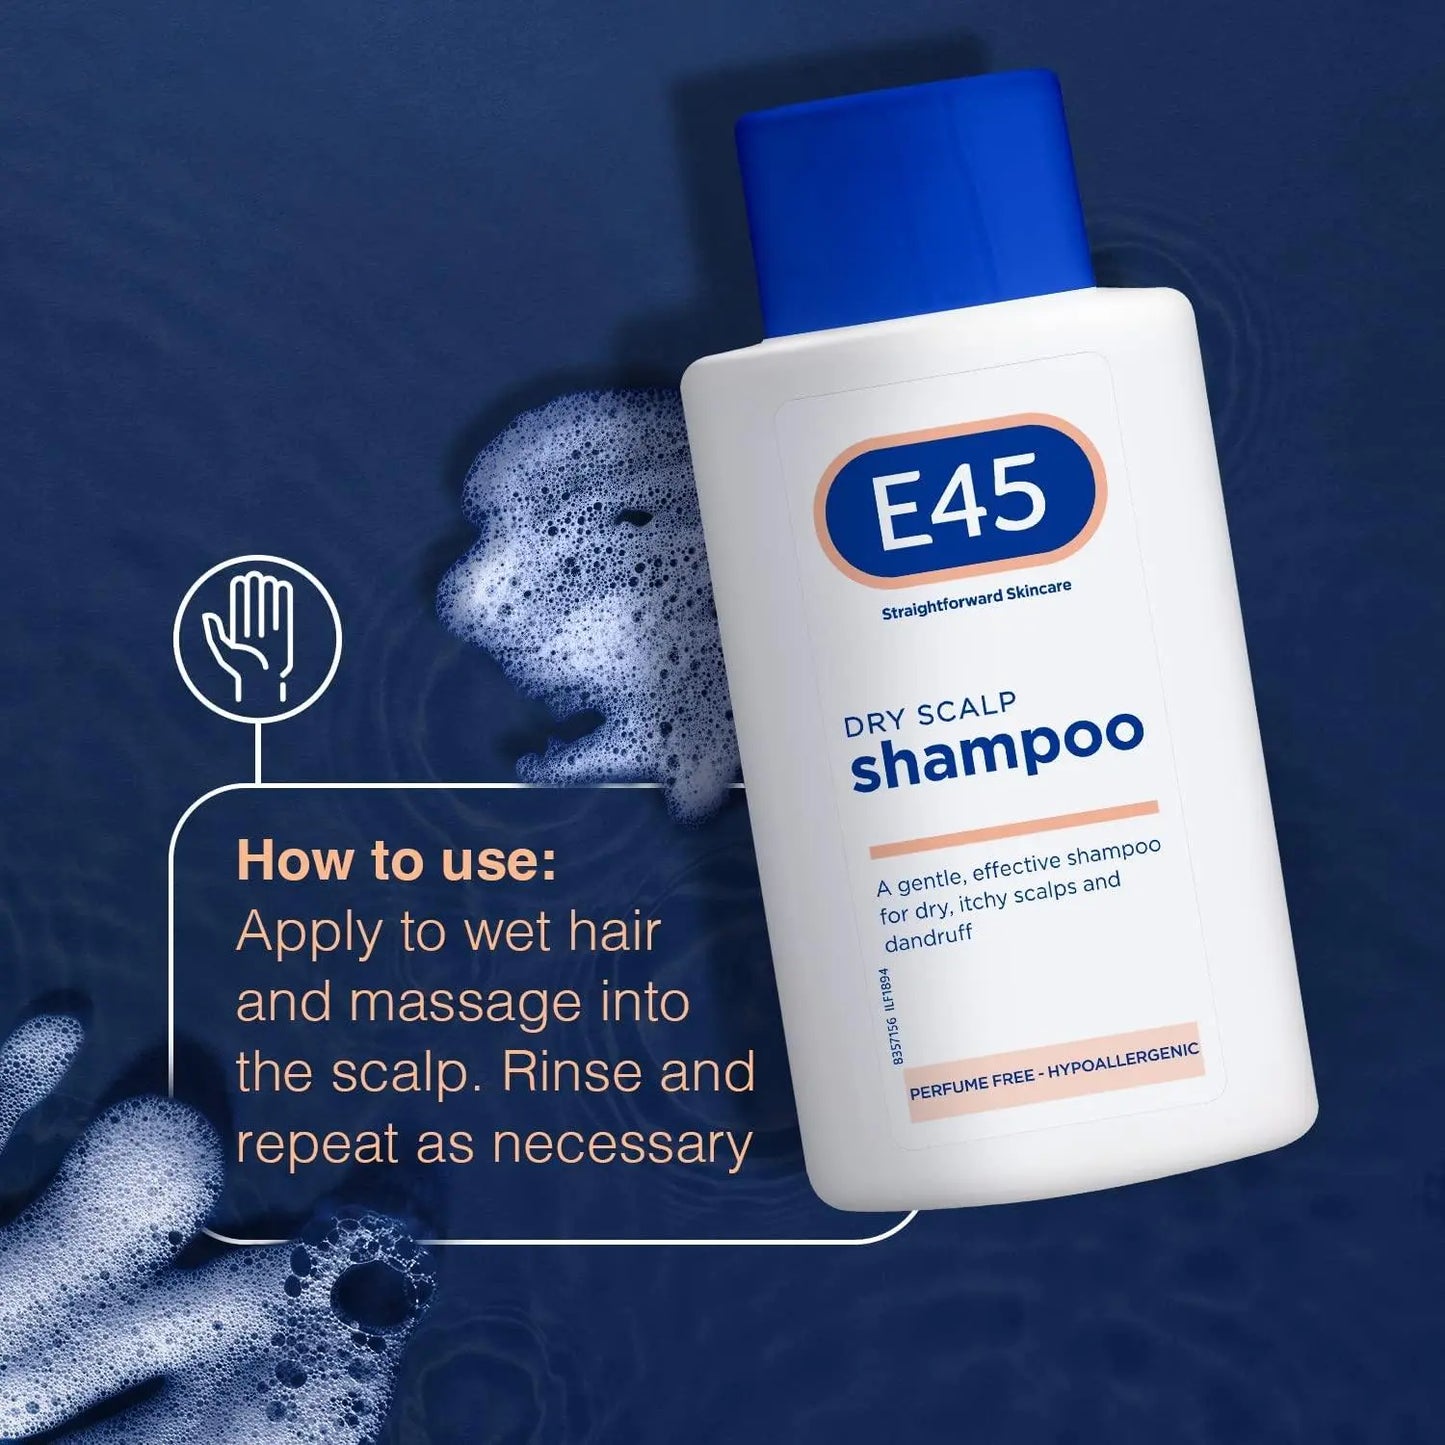 E45 Dry Itchy Scalp Shampoo 200ml